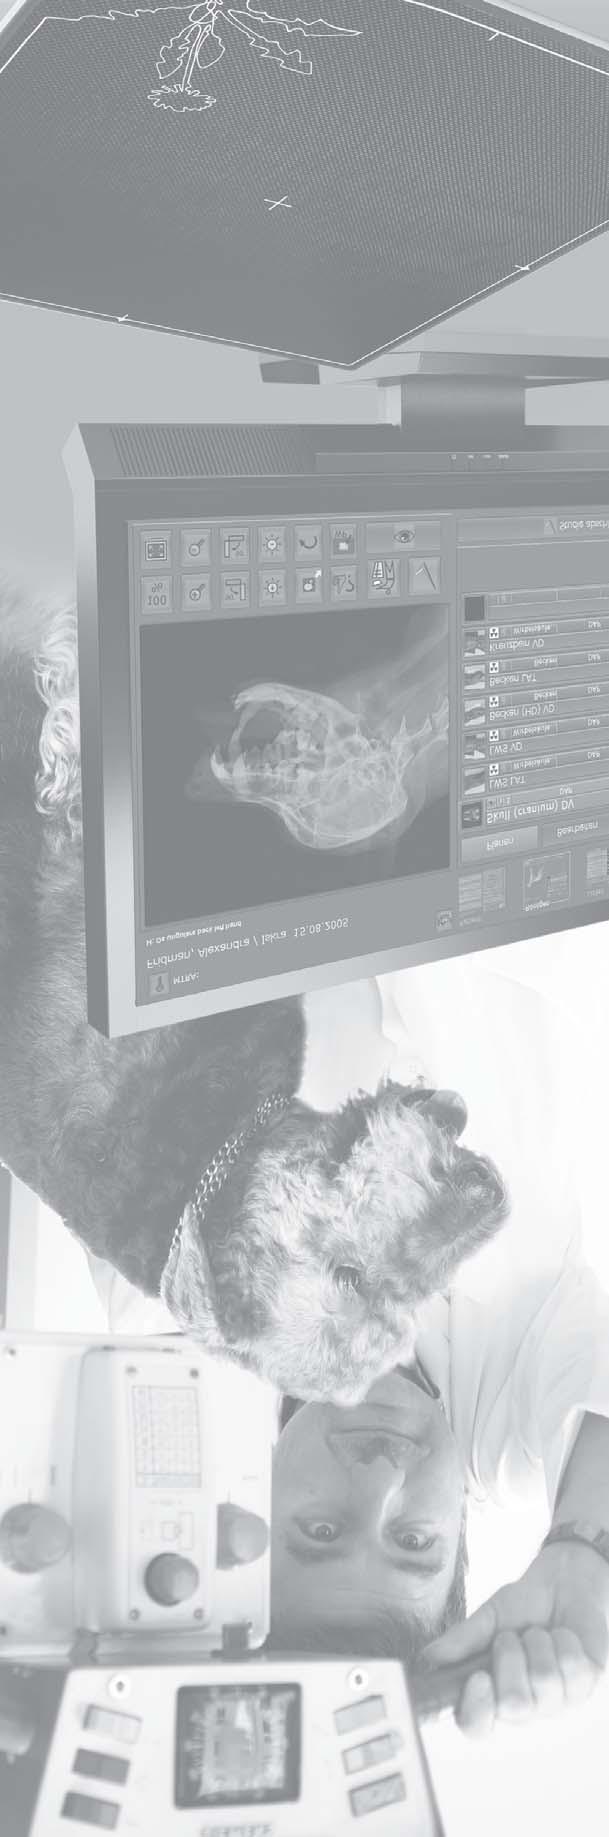 Röntgensystem, welches digitale Röntgenbilder in professioneller, reproduzierbarer Qualität liefert.